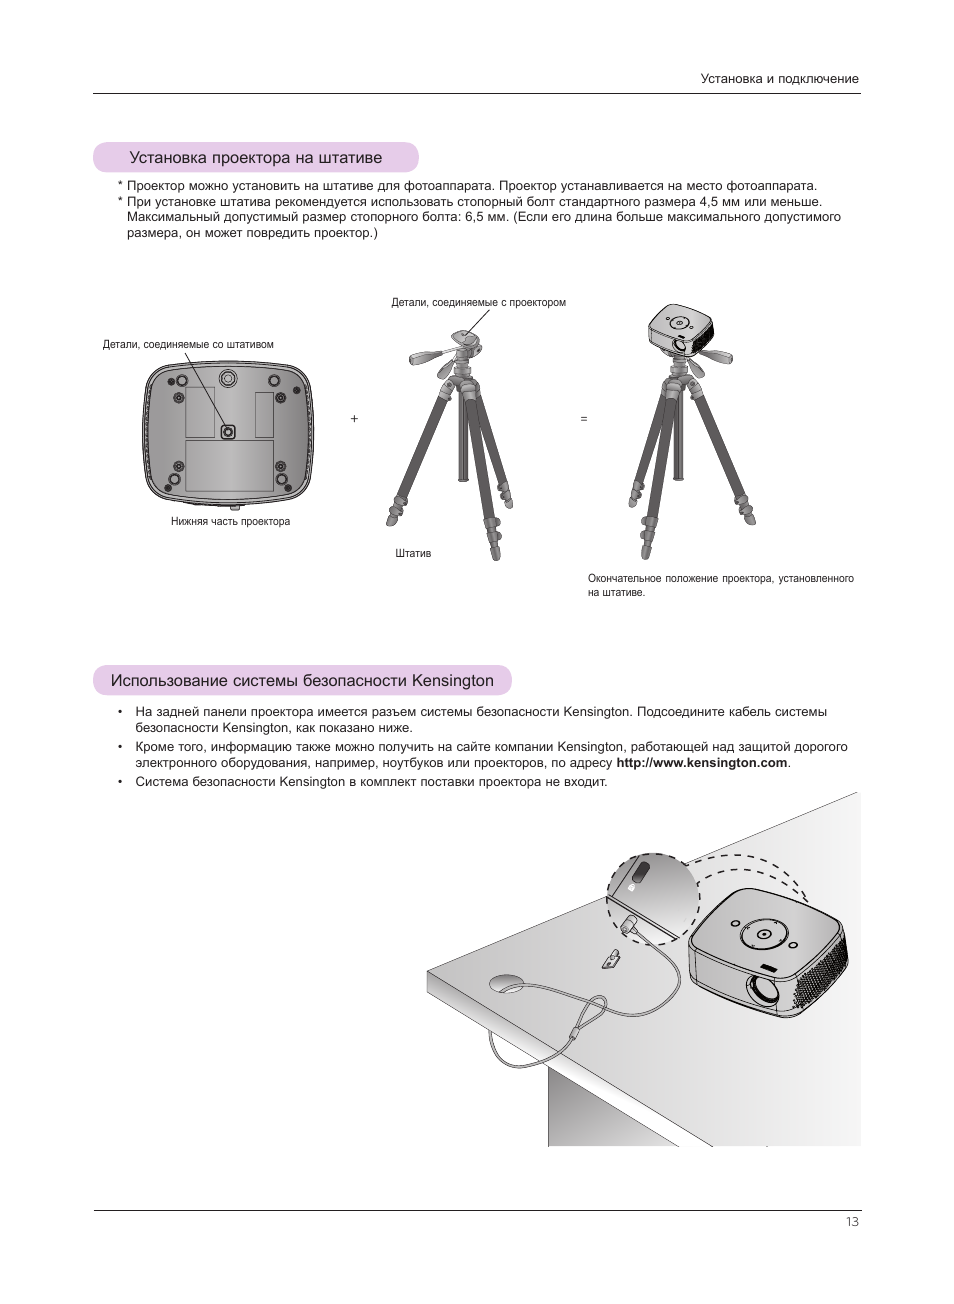 Установка проектора на штативе, Использование системы безопасности kensington | Инструкция по эксплуатации LG HX301G | Страница 13 / 44